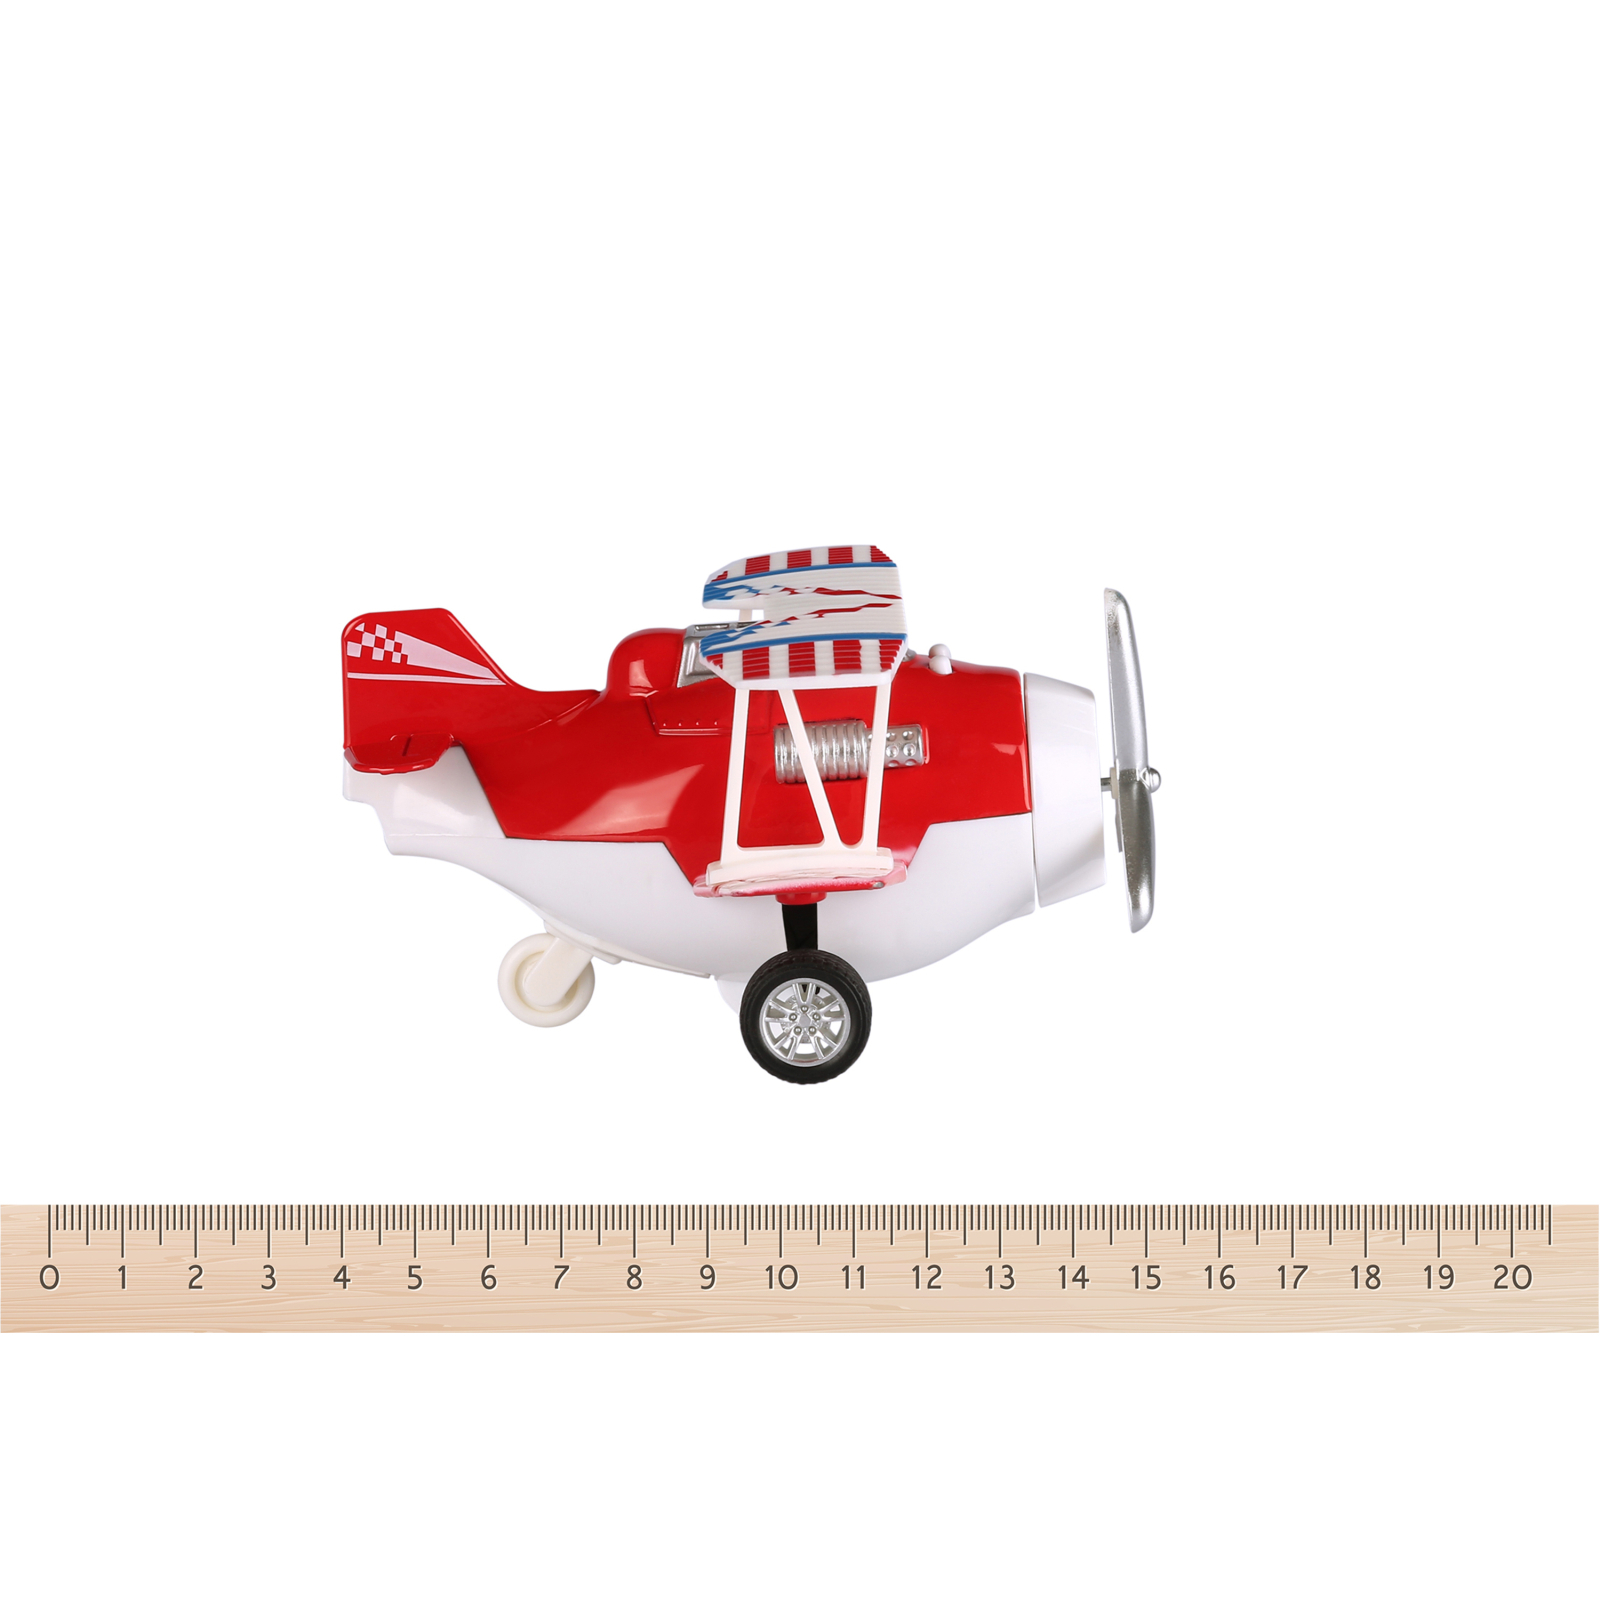 Спецтехника Same Toy Самолет металический инерционный Aircraft оранжевый со свето (SY8012Ut-1) изображение 3